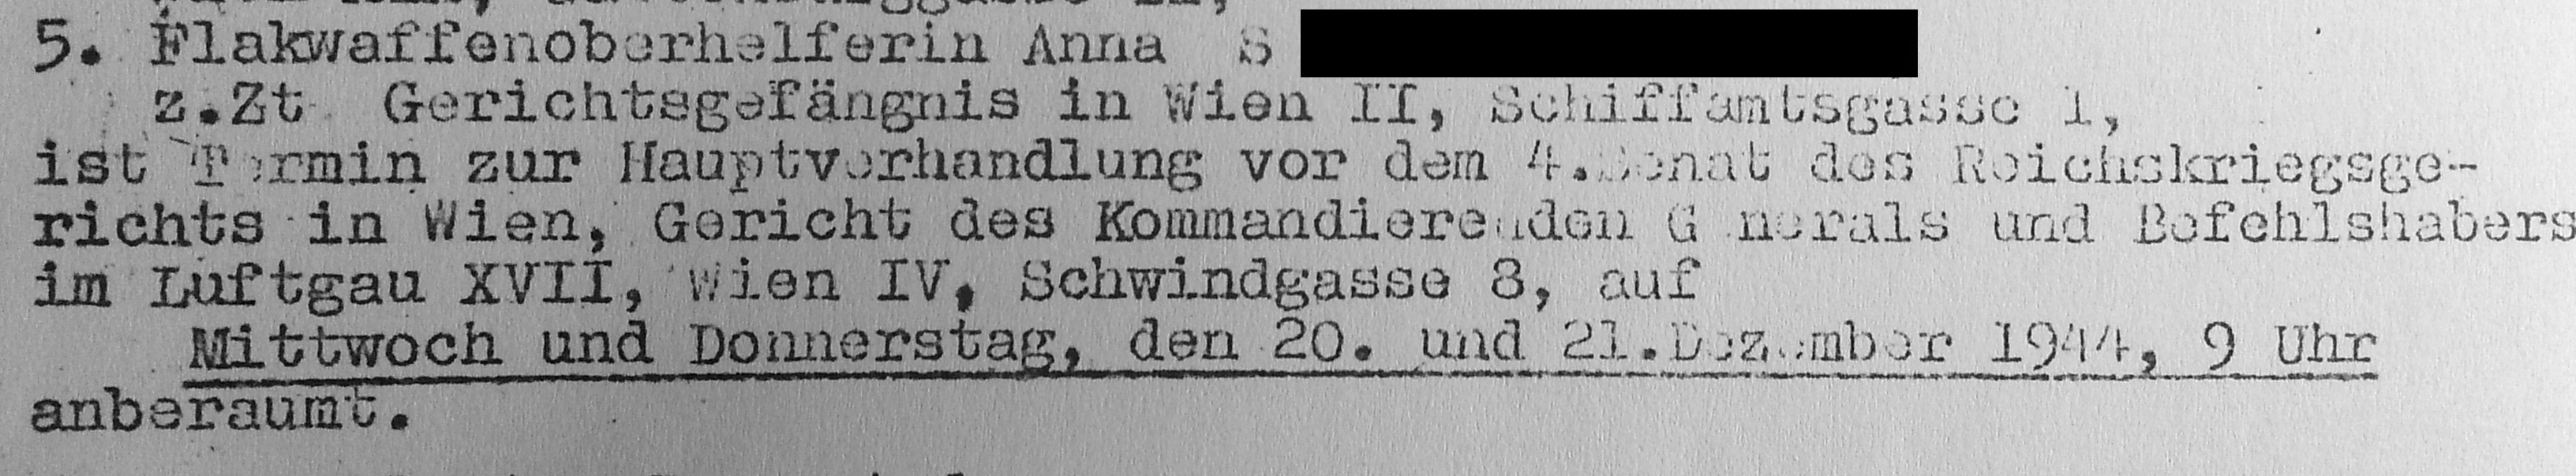 Ausschnitt aus einer Verfahrensverfügung gegen Angehörige einer steirischen Widerstandsgruppe (OFF) zu einer Verhandlung in der Schwindgasse 8, 1944 (Quelle: DÖW 21062/85C)